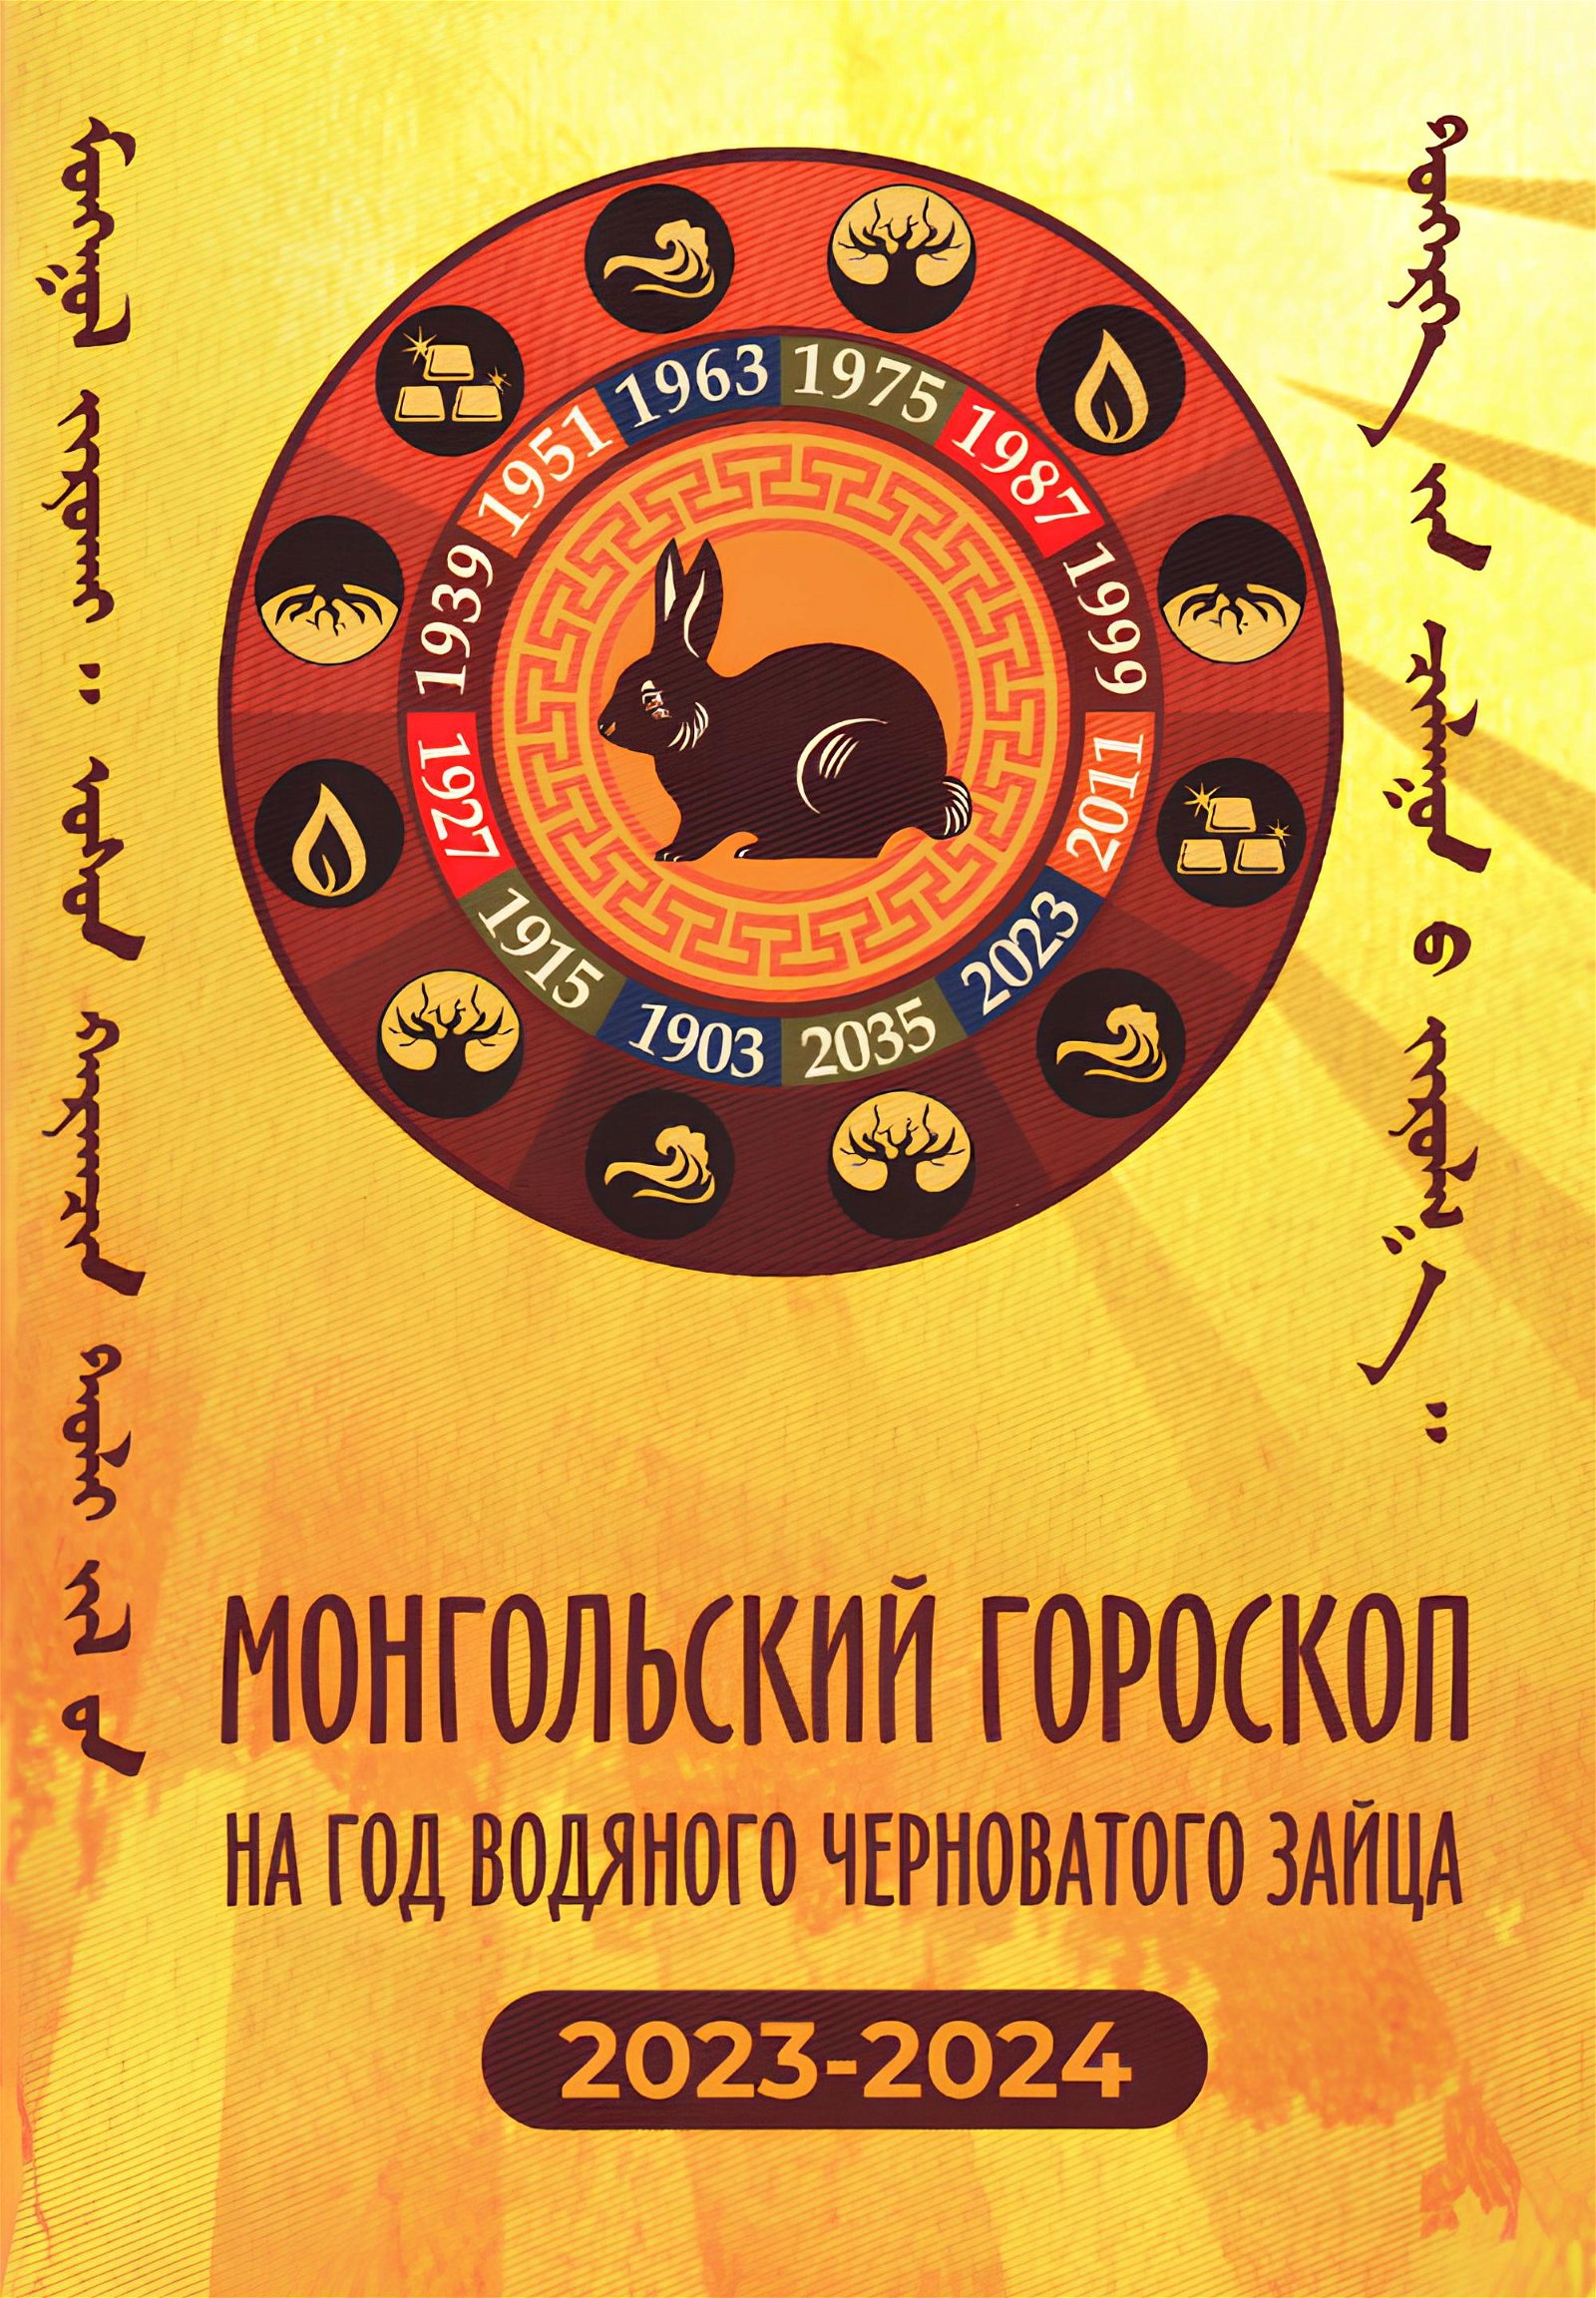 Монгольский гороскоп на год Водяного Черноватого Зайца 2023-2024. 